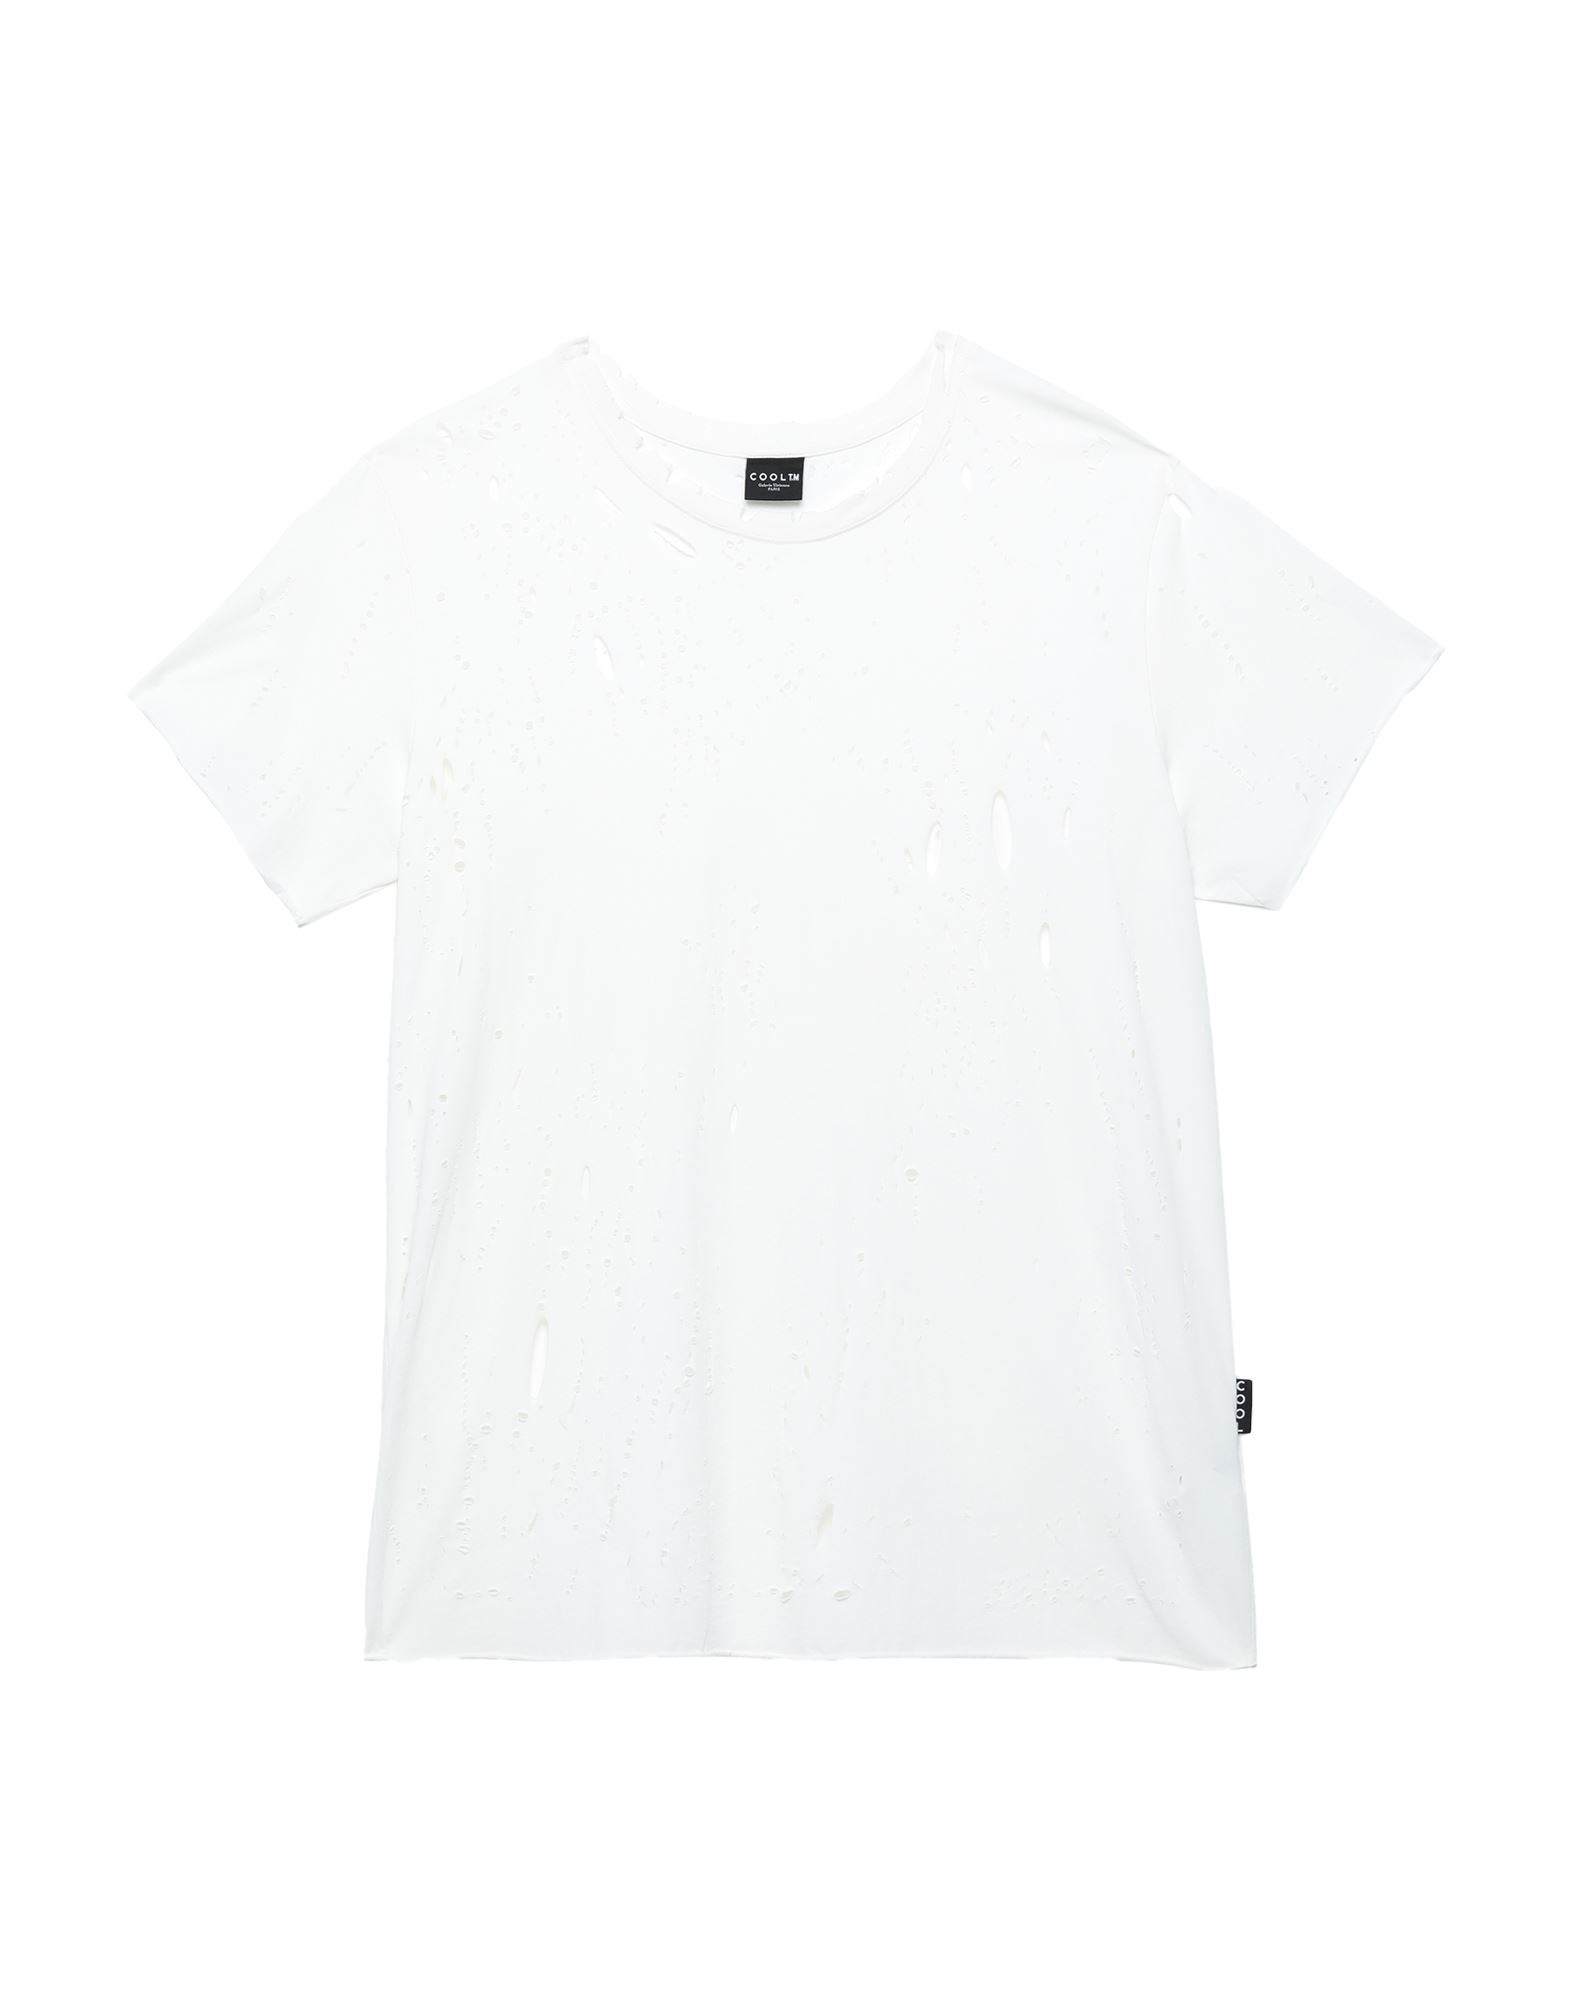 COOL T.M T-shirts Herren Weiß von COOL T.M